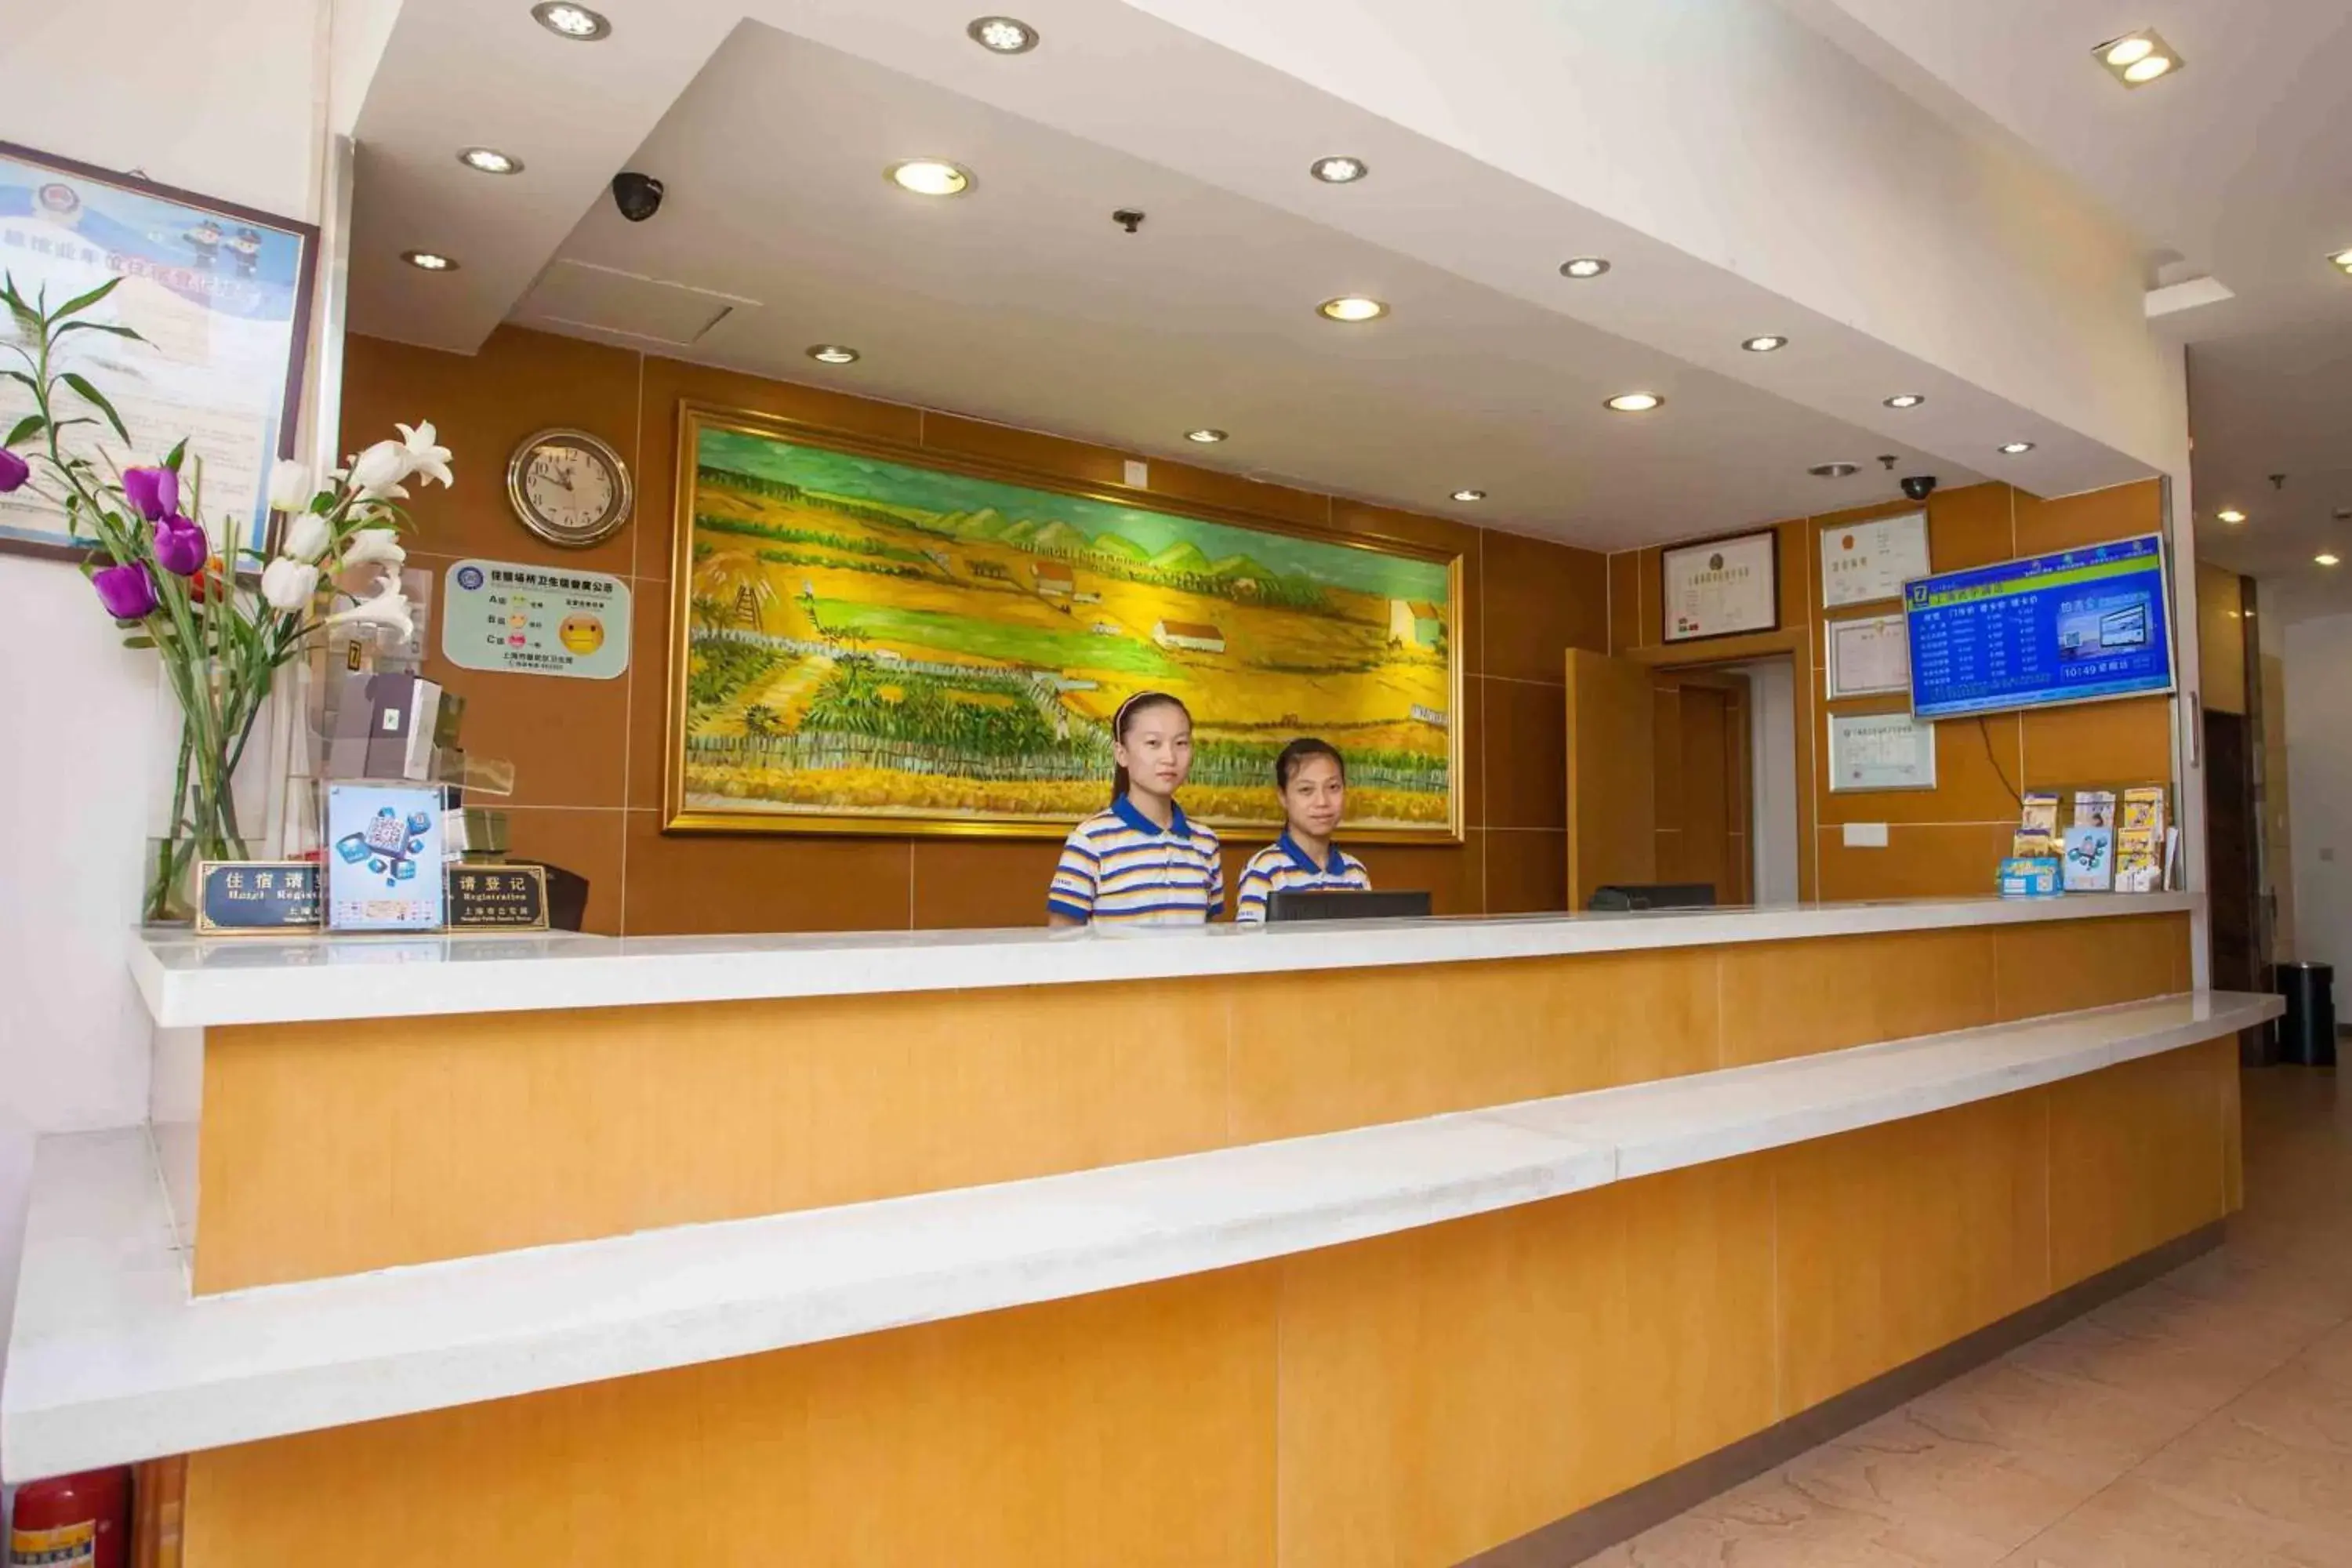 Lobby or reception, Lobby/Reception in 7 Days Inn Chengdu Wuhoucu Bridge Branch